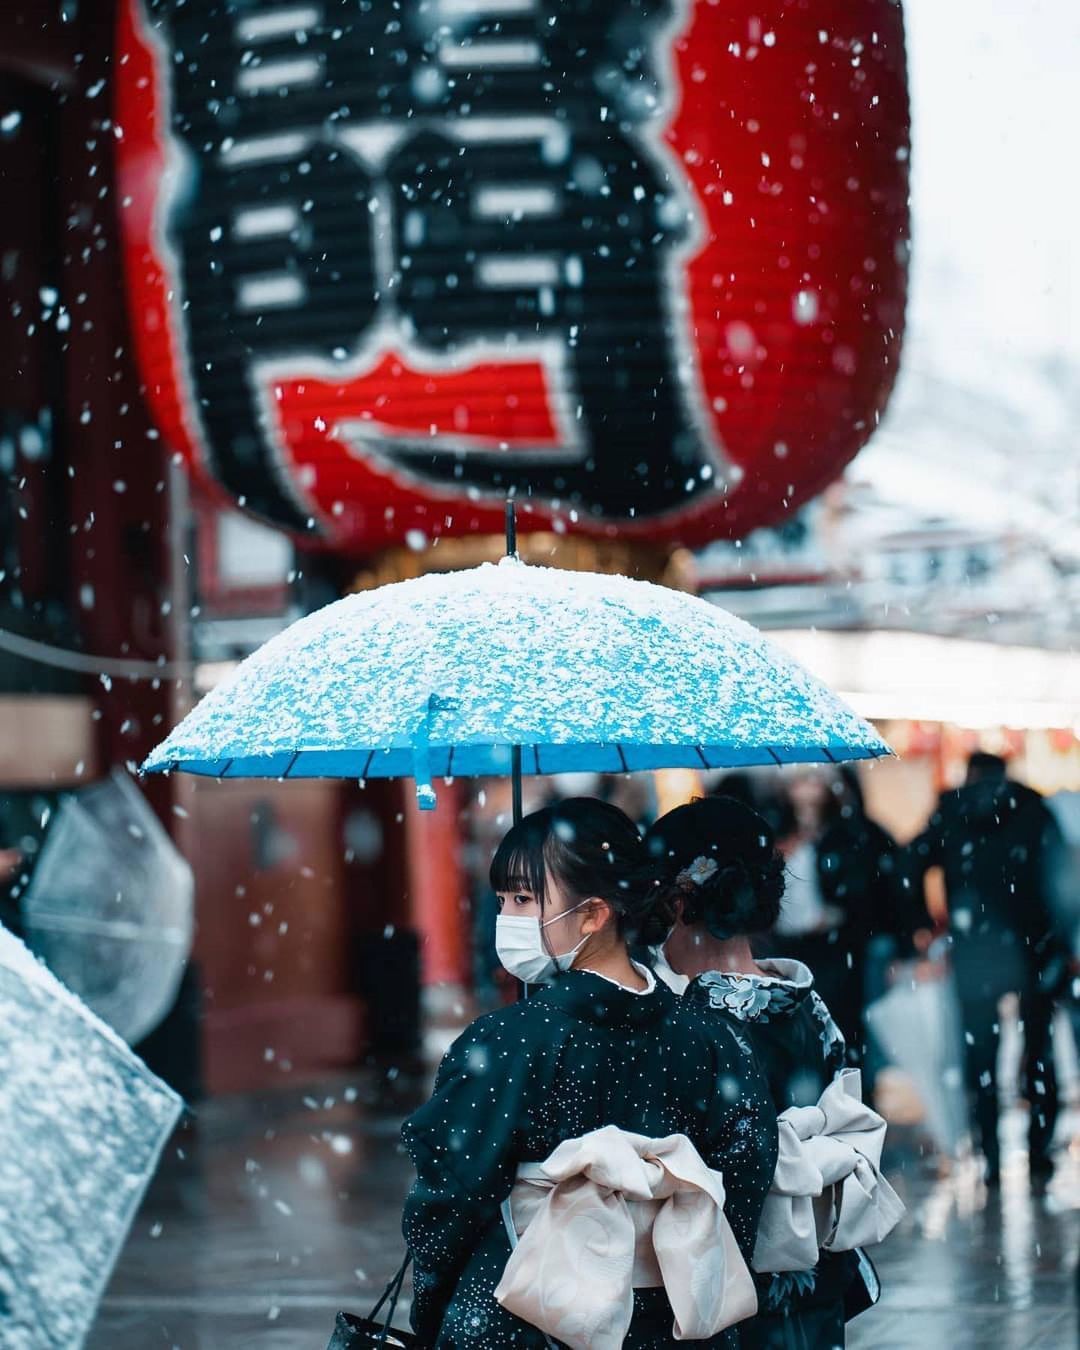 Chùm ảnh: Khung cảnh Tokyo dưới tuyết trắng đẹp đến nao lòng, phảng phất nét buồn tựa cổ tích mùa đông - Ảnh 9.